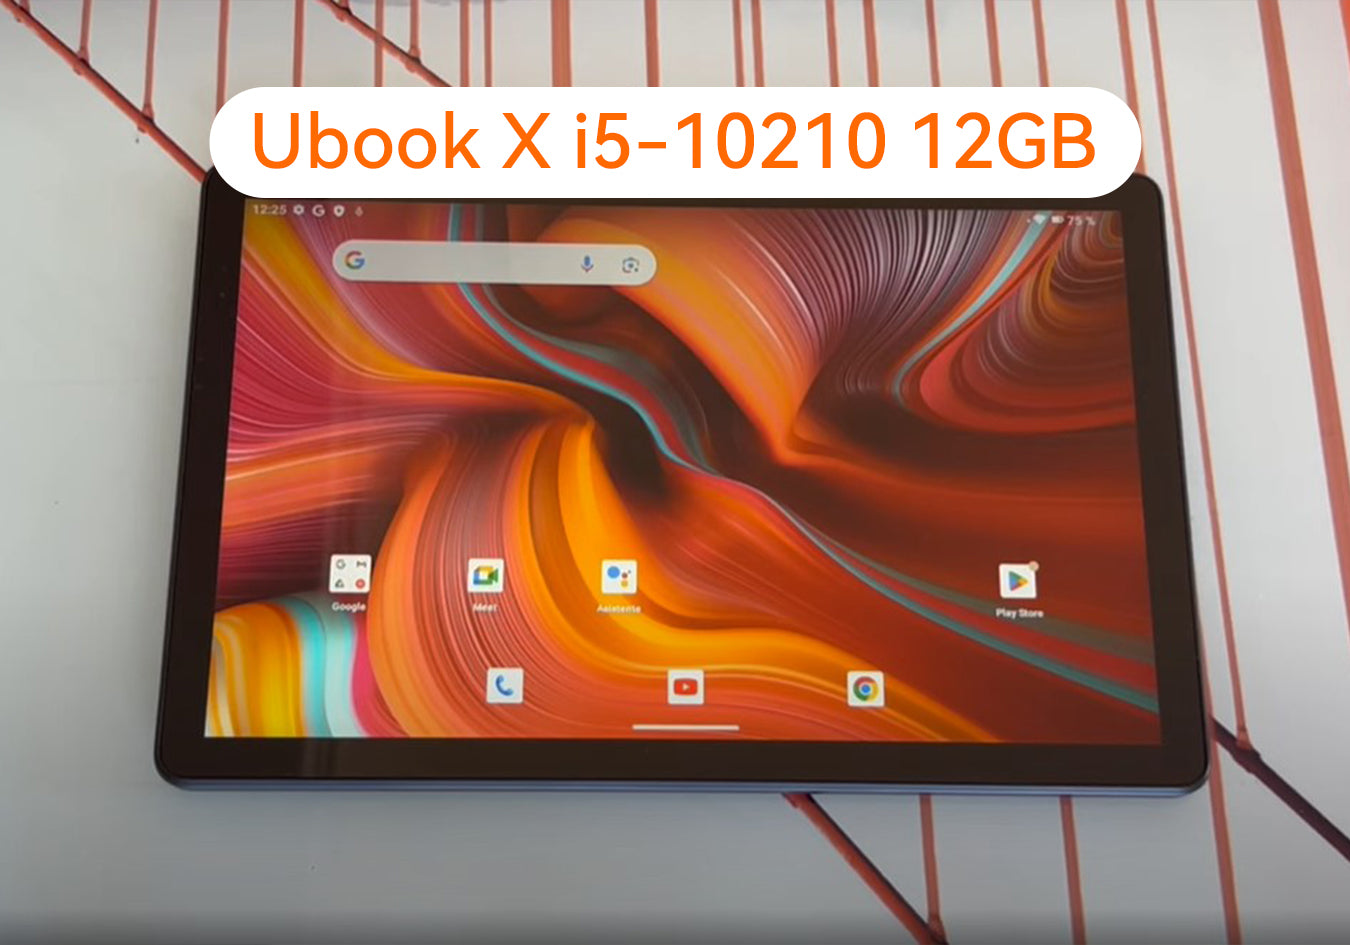 Ubook X i5-10210 12GB: Como instalar Android en una tablet desde cero